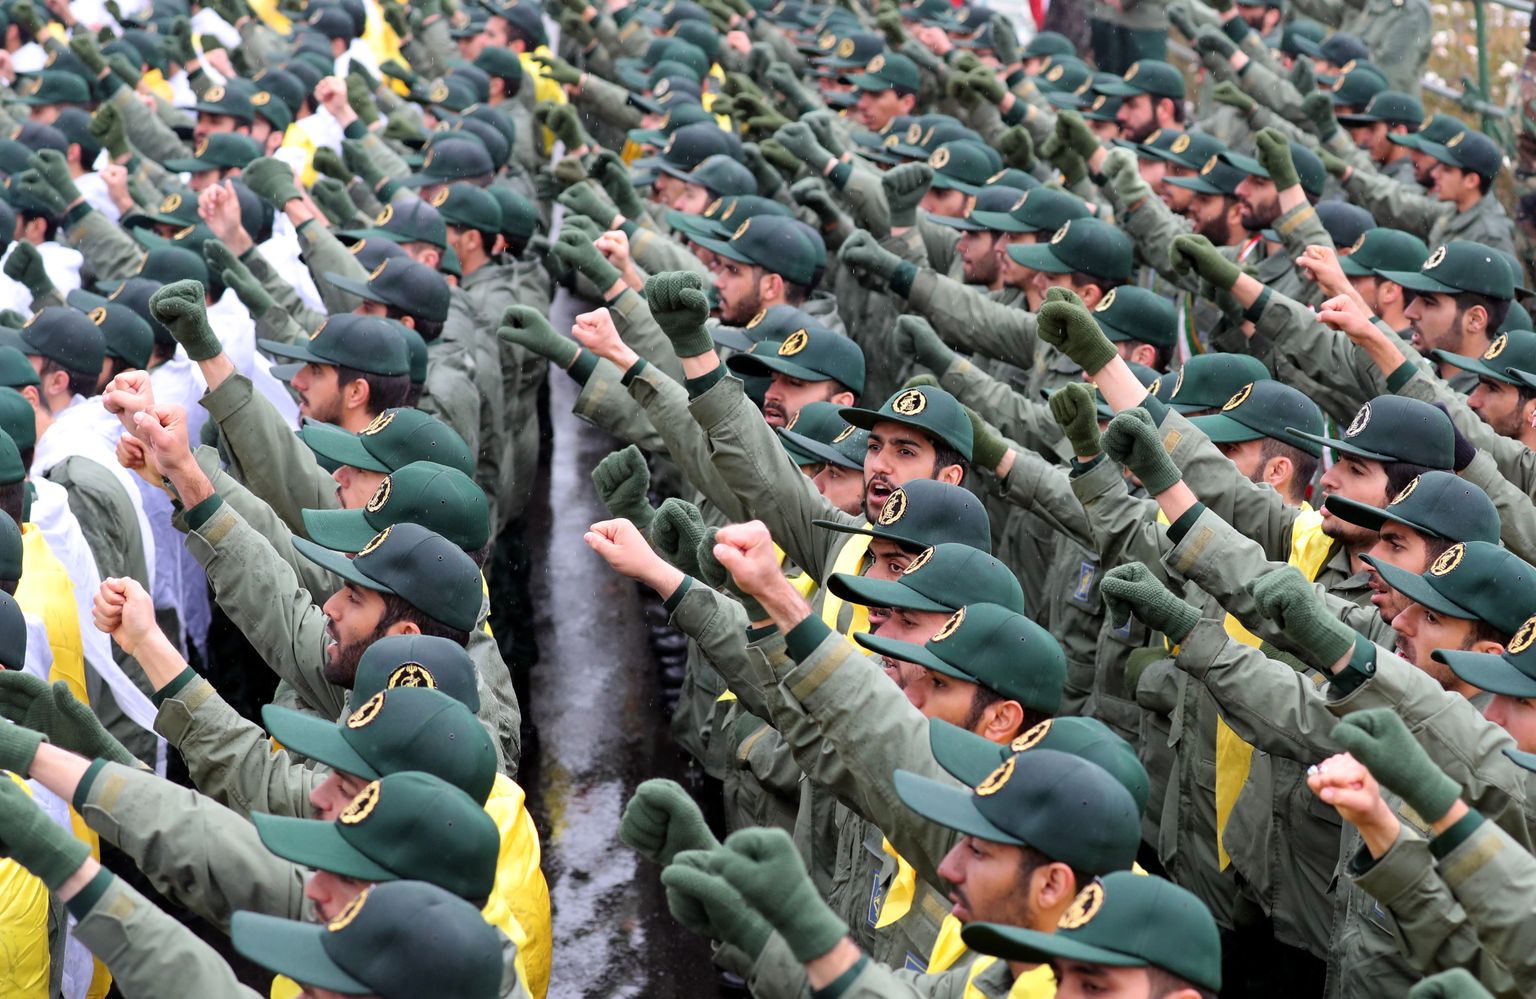 Iraani revolutsioonikaardi liikmed.